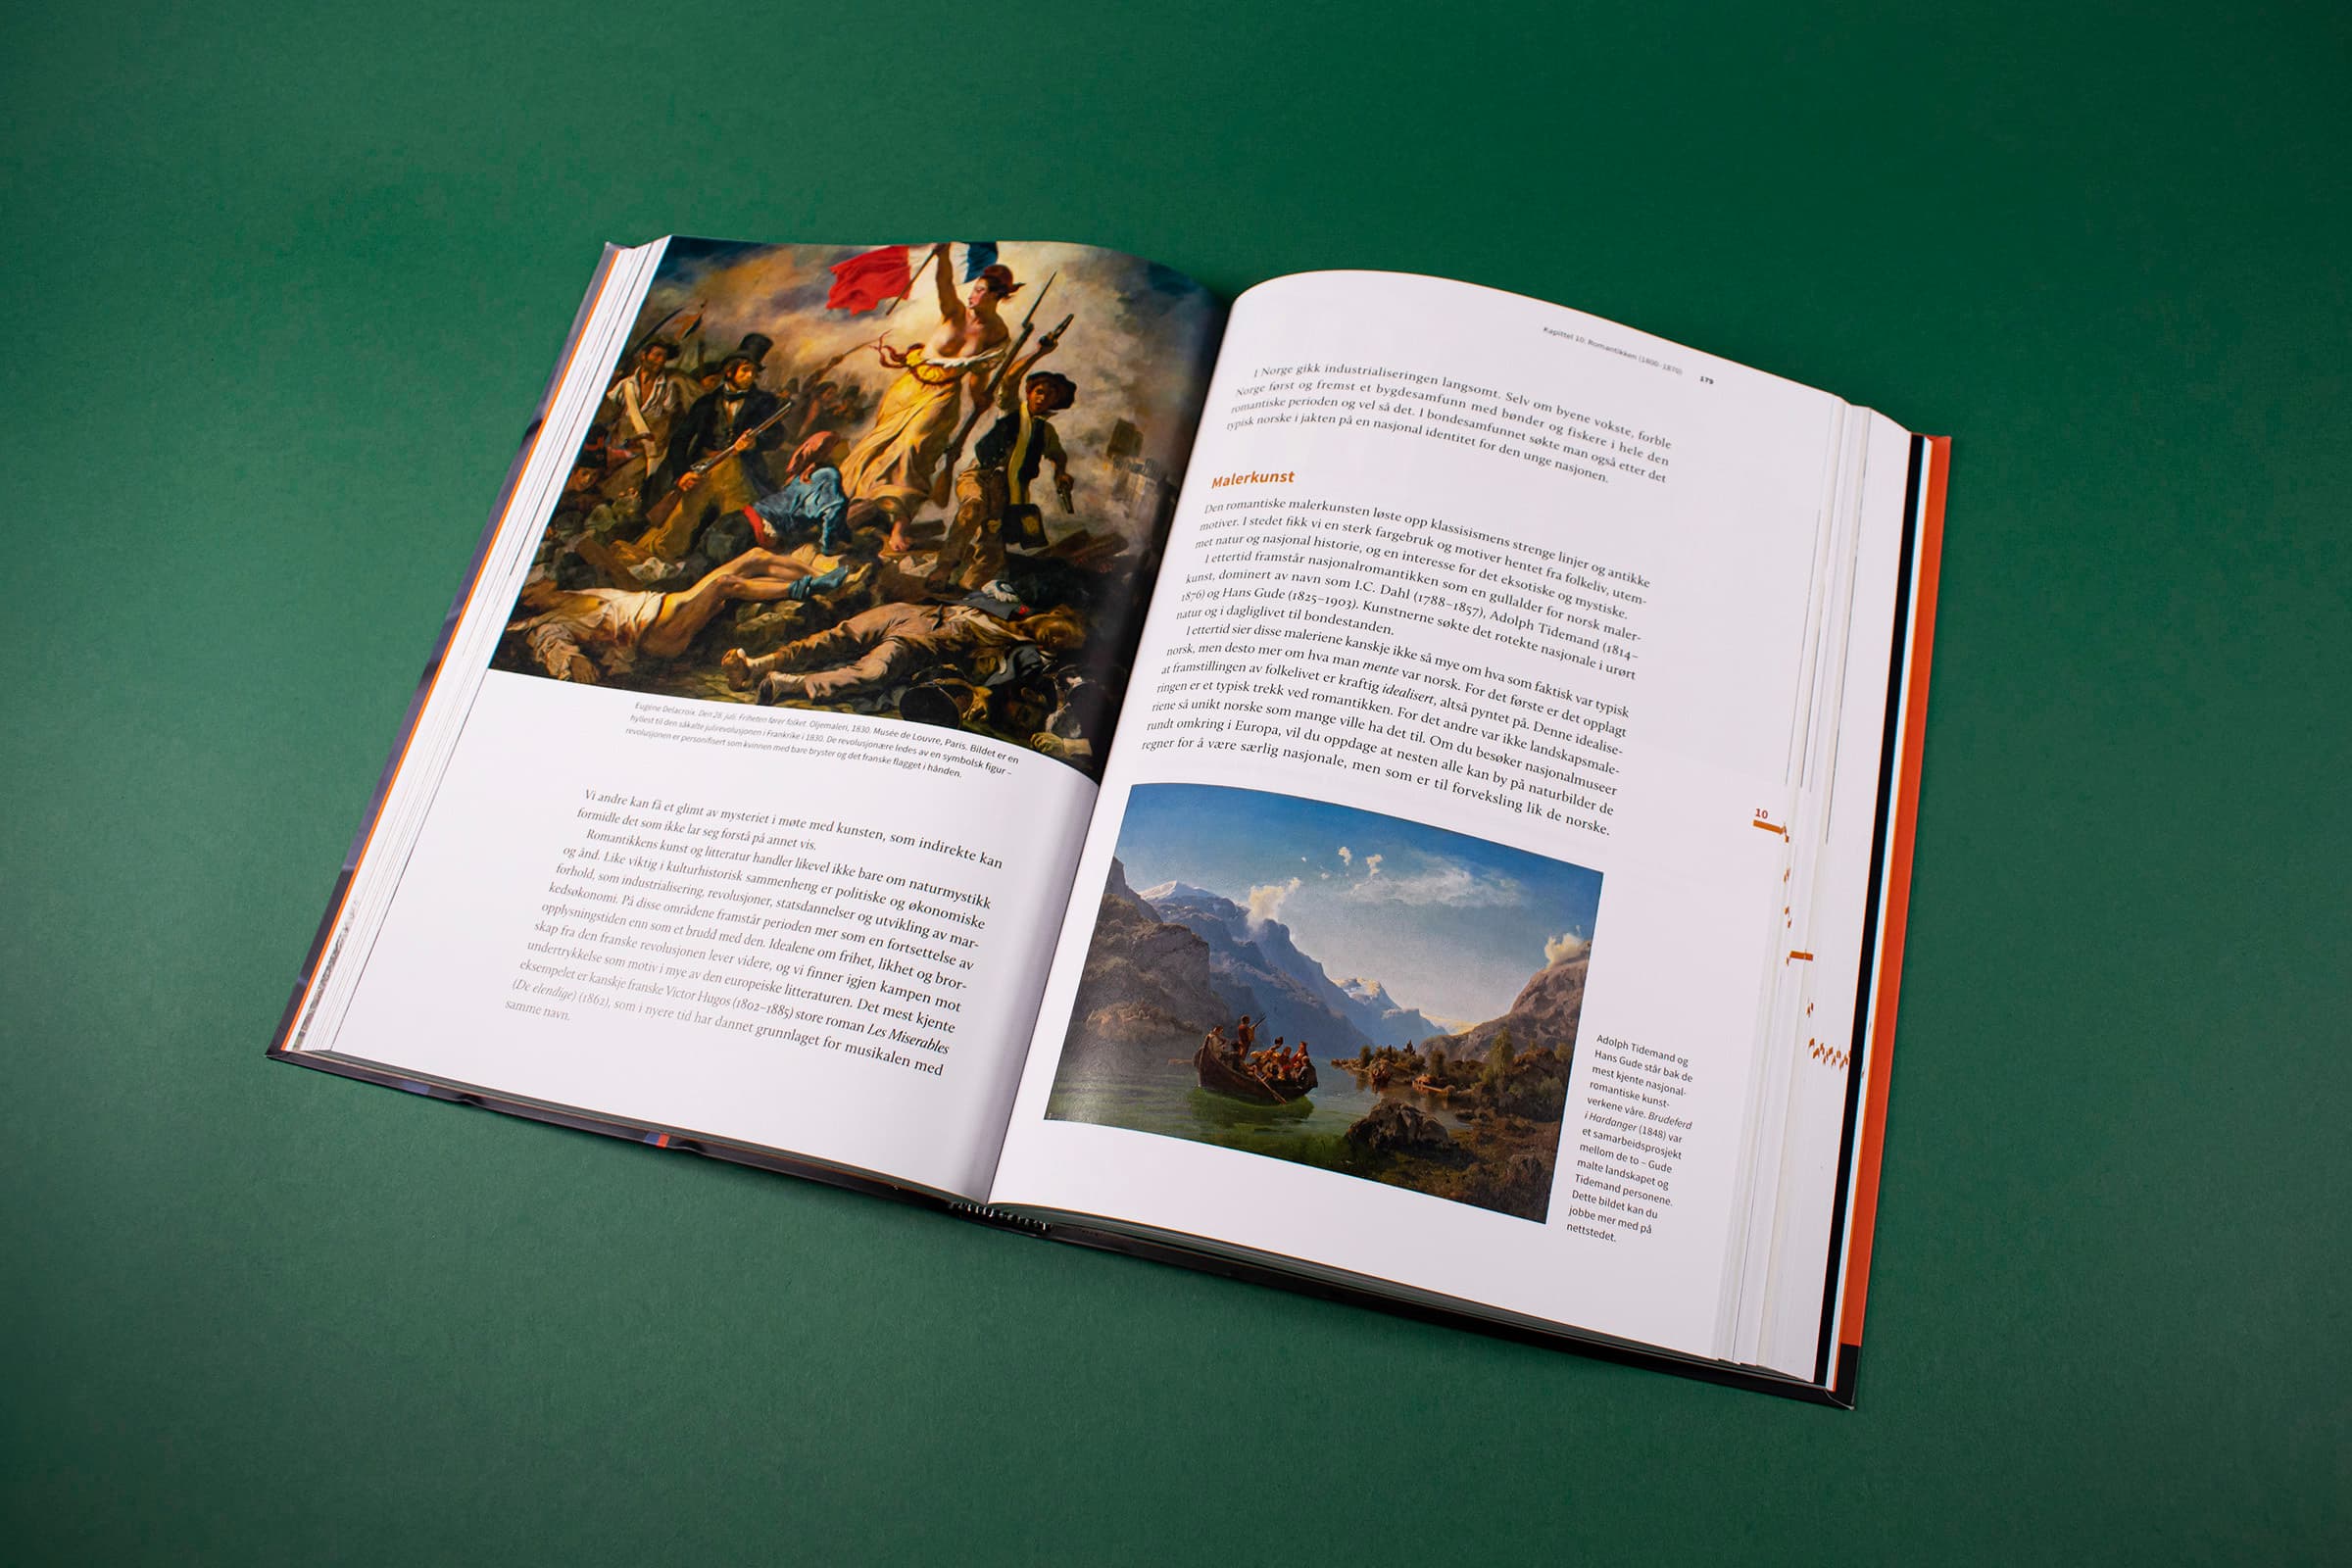 Bildet viser et oppslag i boken med to store bilder, bildetekst og brødtekst. På bokens ytterkant er det et navigasjonselement som indikerer hvor det starter et nytt kapittel og hvor stort det er.